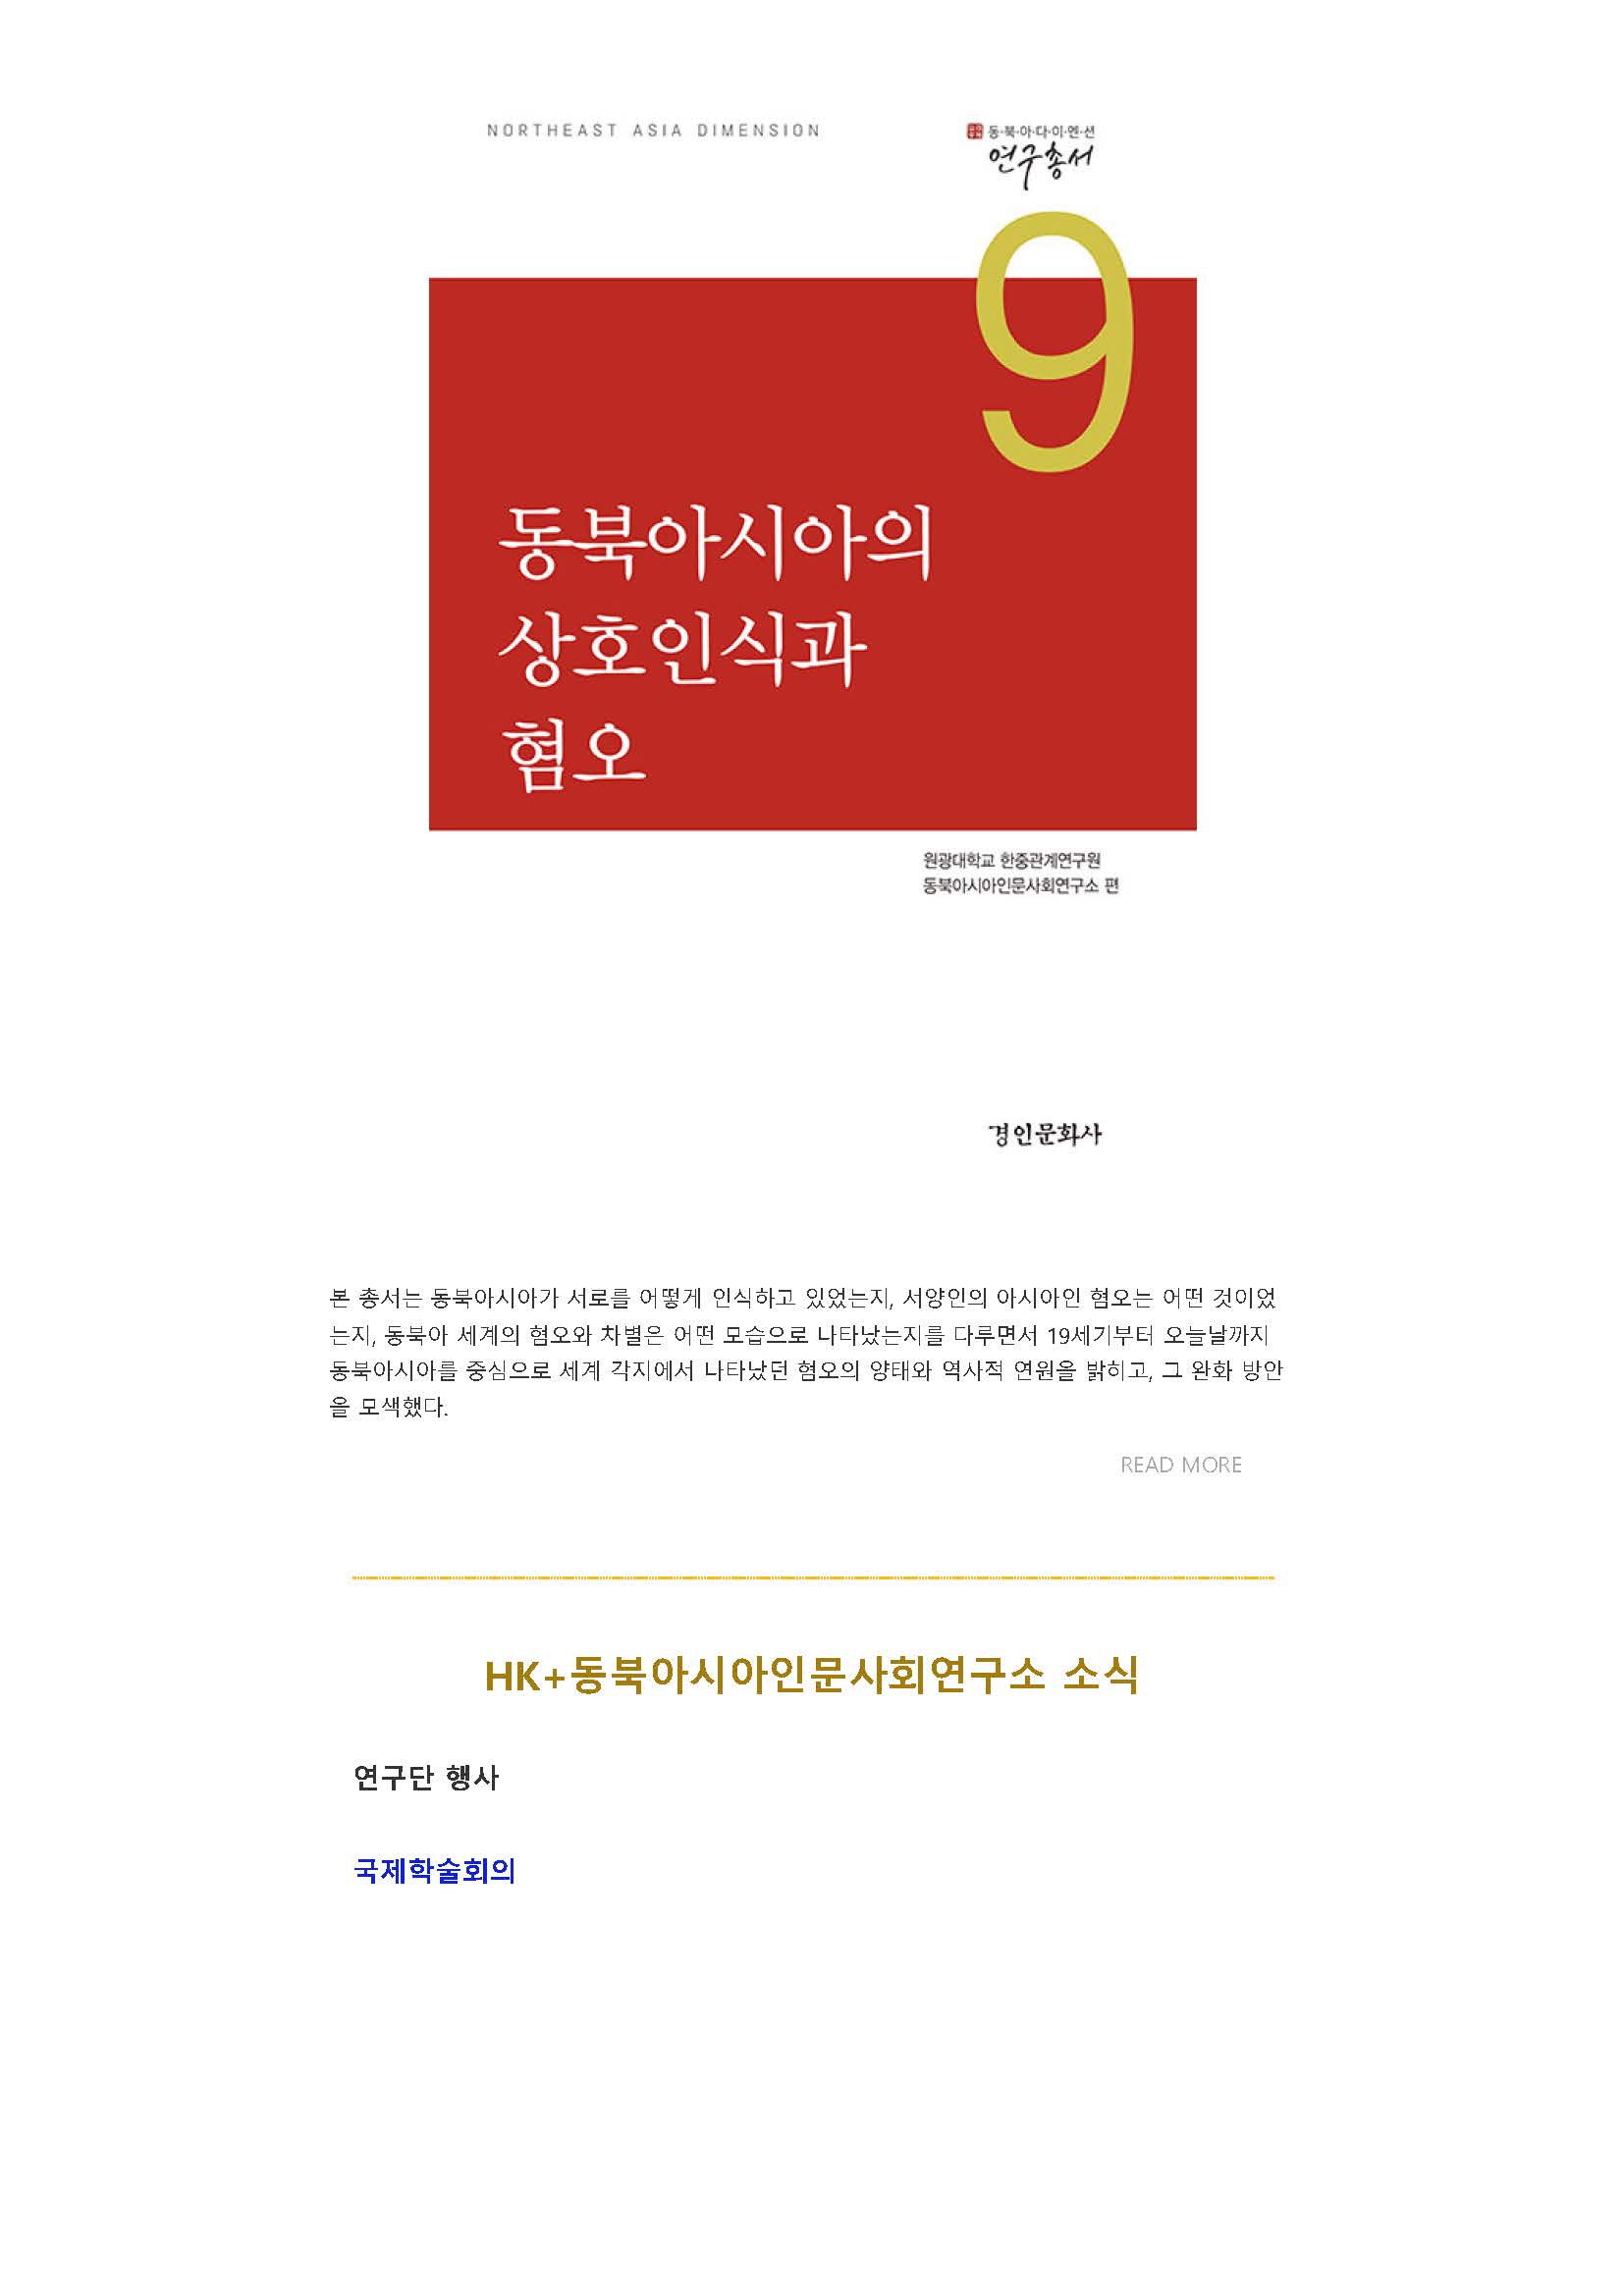 원광대 HK+ 동북아시아인문사회연구소 뉴스레터 VOL.13_페이지_03.jpg